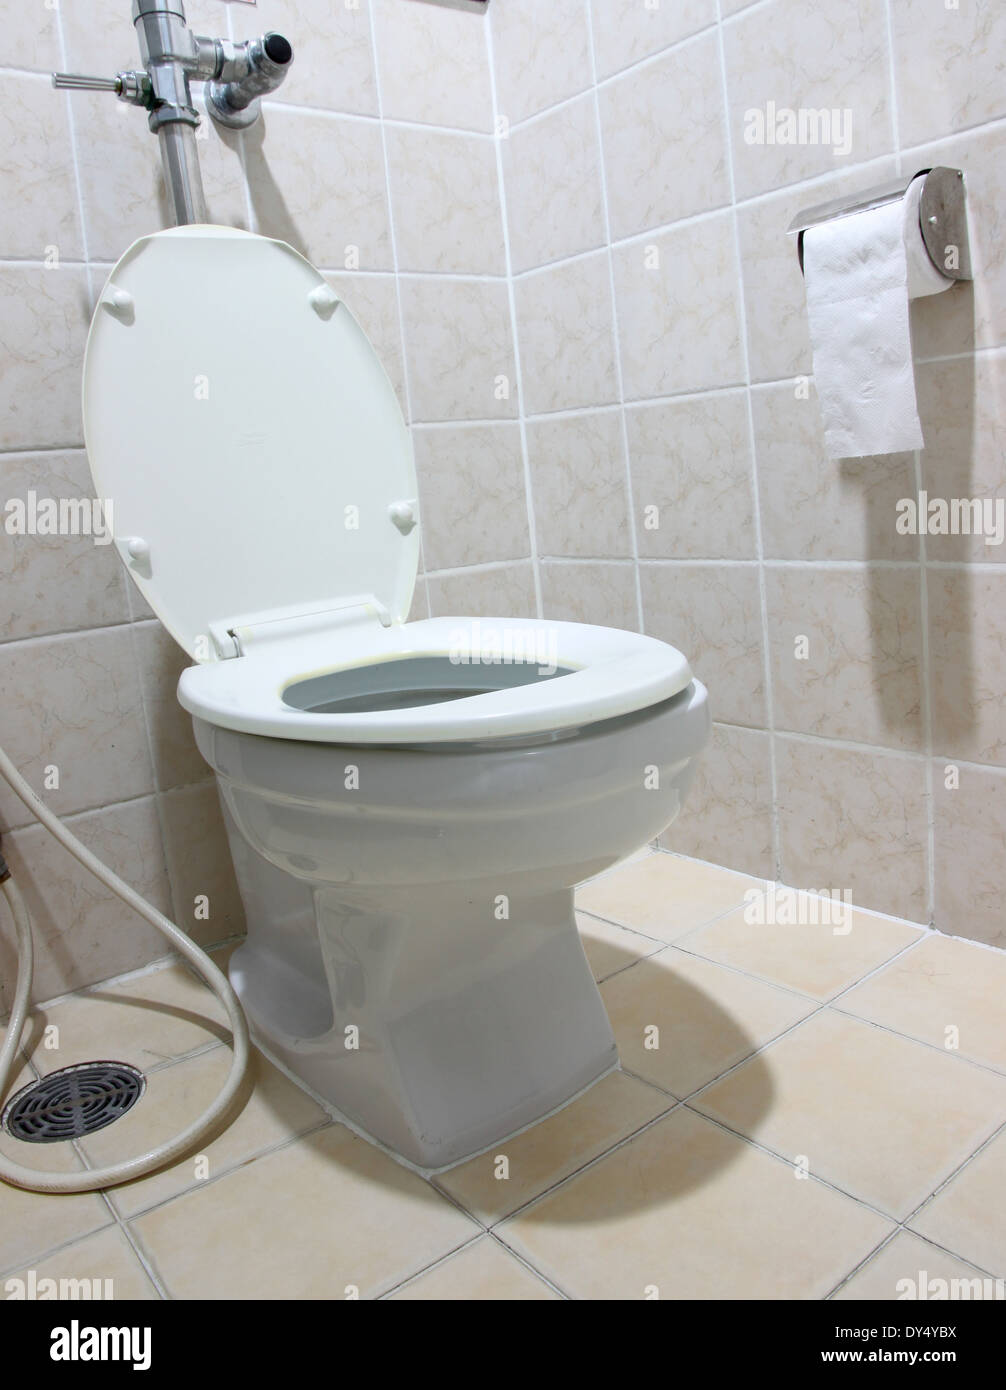 Toilettes à chasse d'eau blanche et le papier toilette dans une salle de bains. Banque D'Images